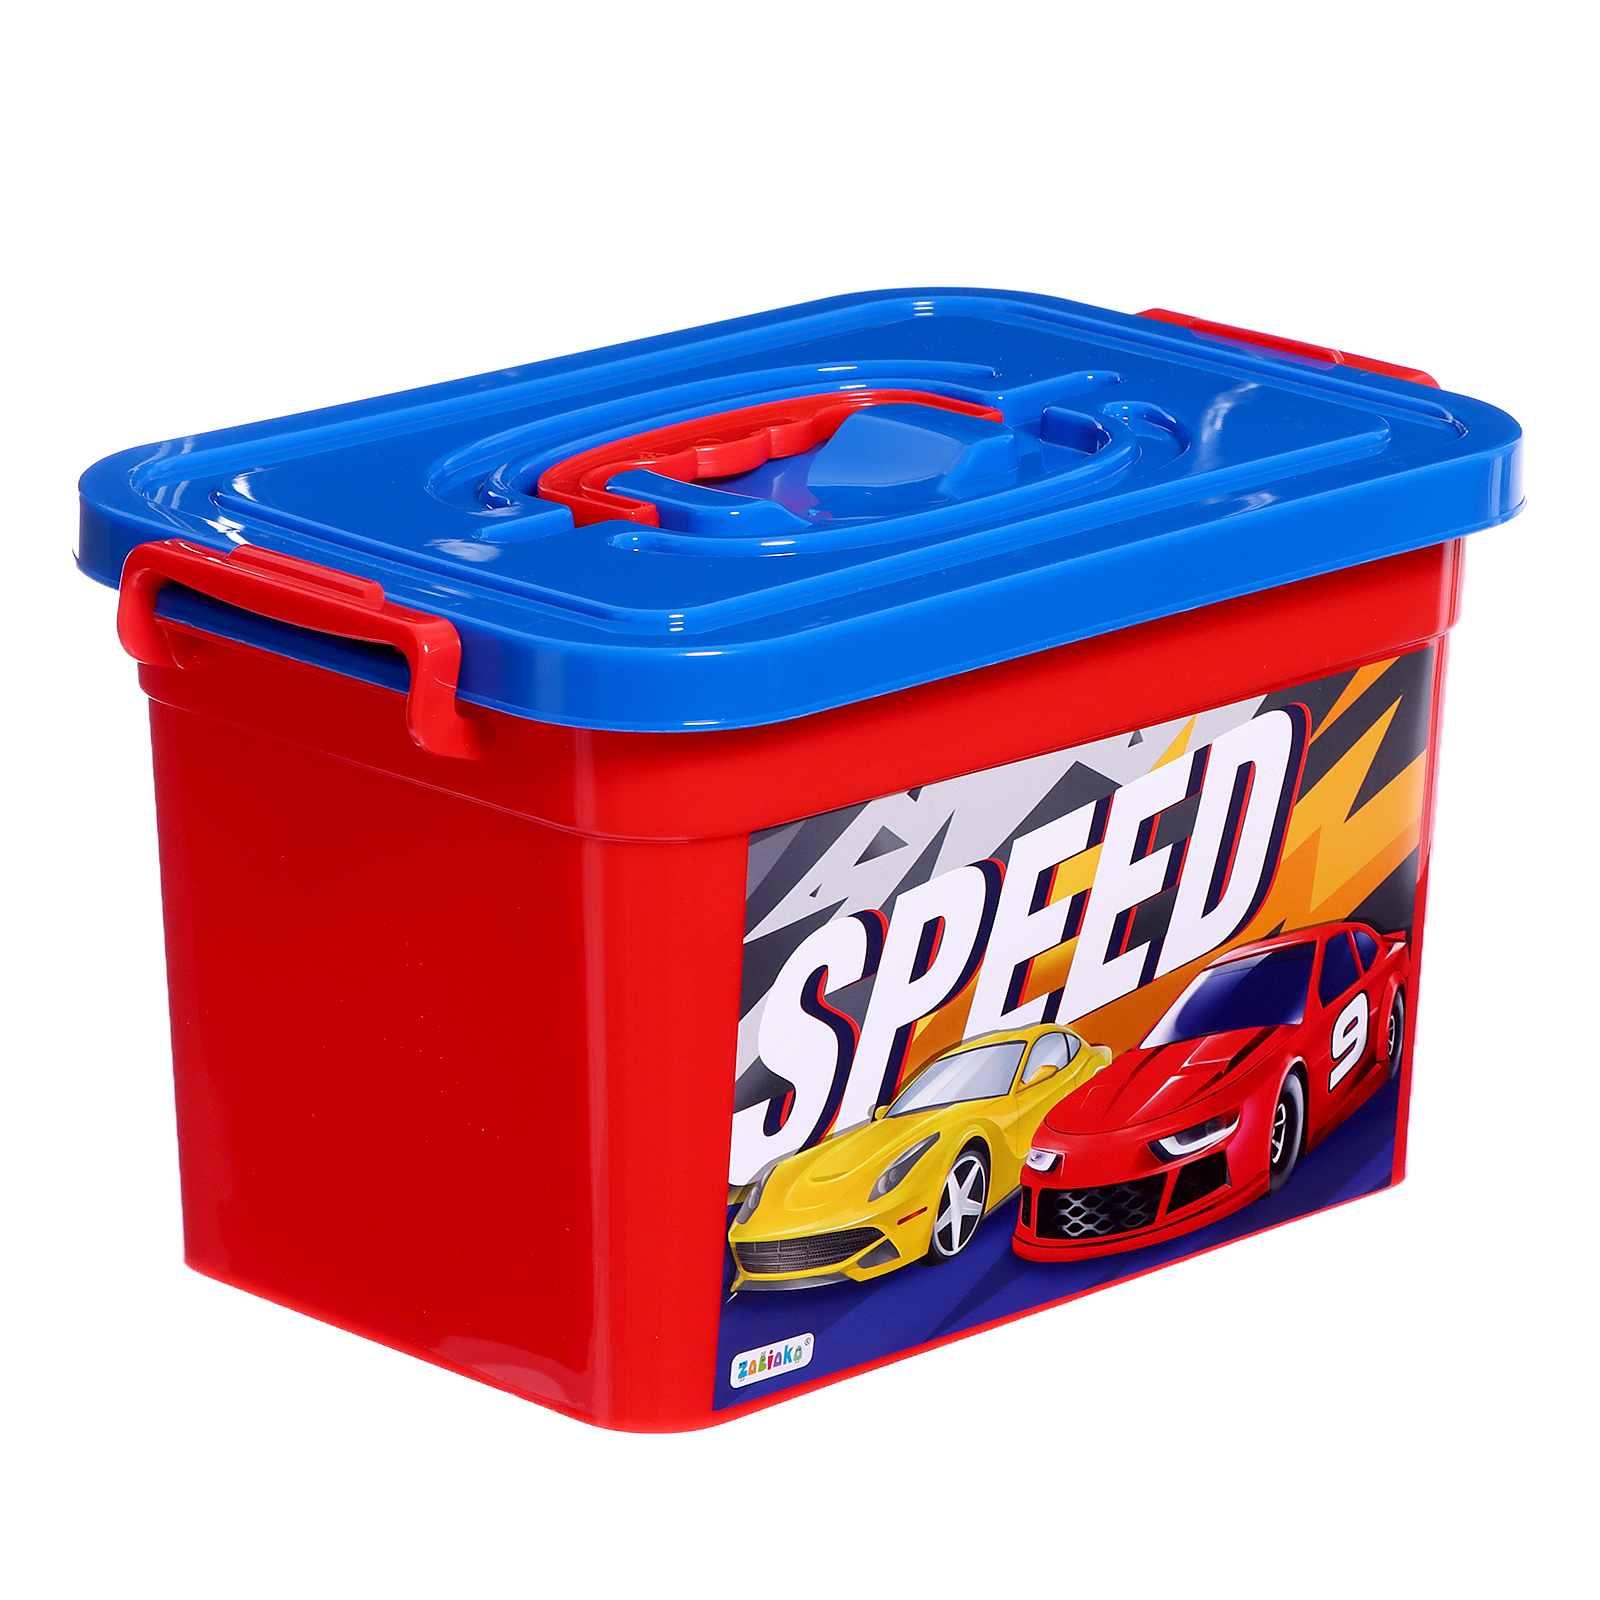 Ящик для хранения игрушек Соломон Крутые тачки, 6,5 л детский ящик для игрушек cool на колёсах 50 литров синий колокольчик